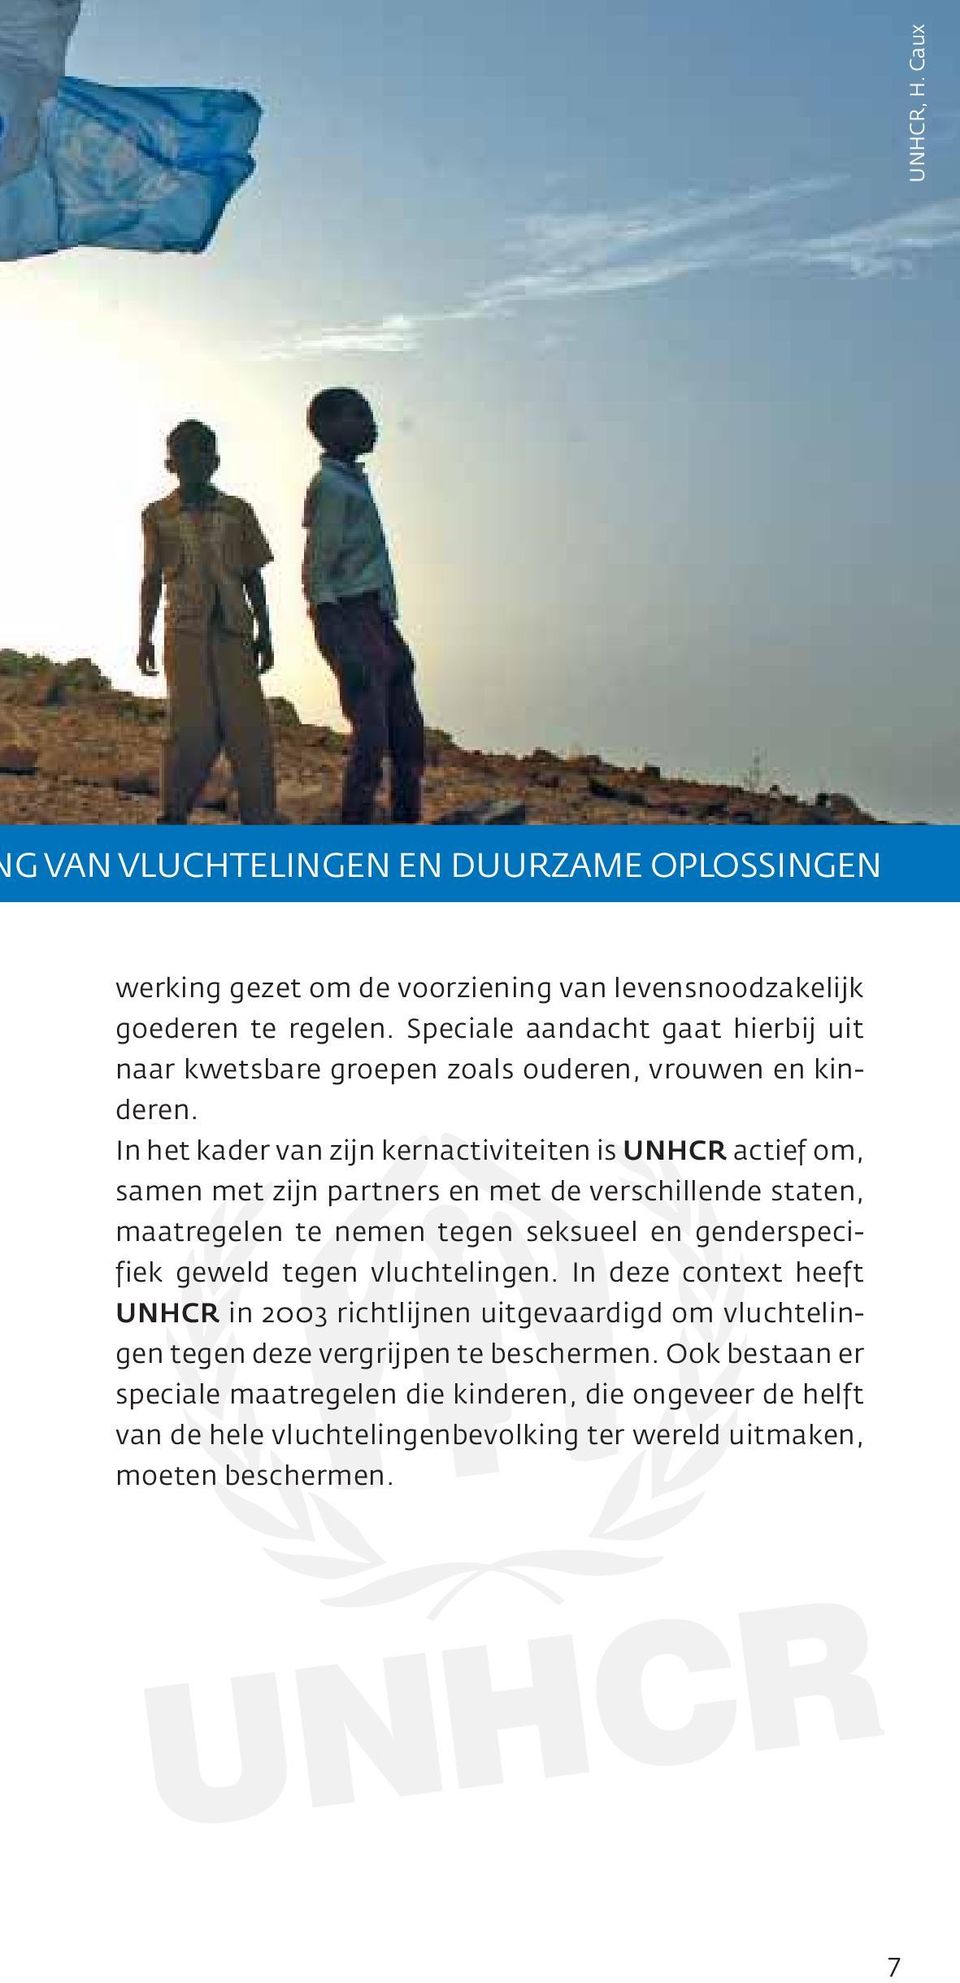 In het kader van zijn kernactiviteiten is UNHCR actief om, samen met zijn partners en met de verschillende staten, maatregelen te nemen tegen seksueel en genderspecifiek